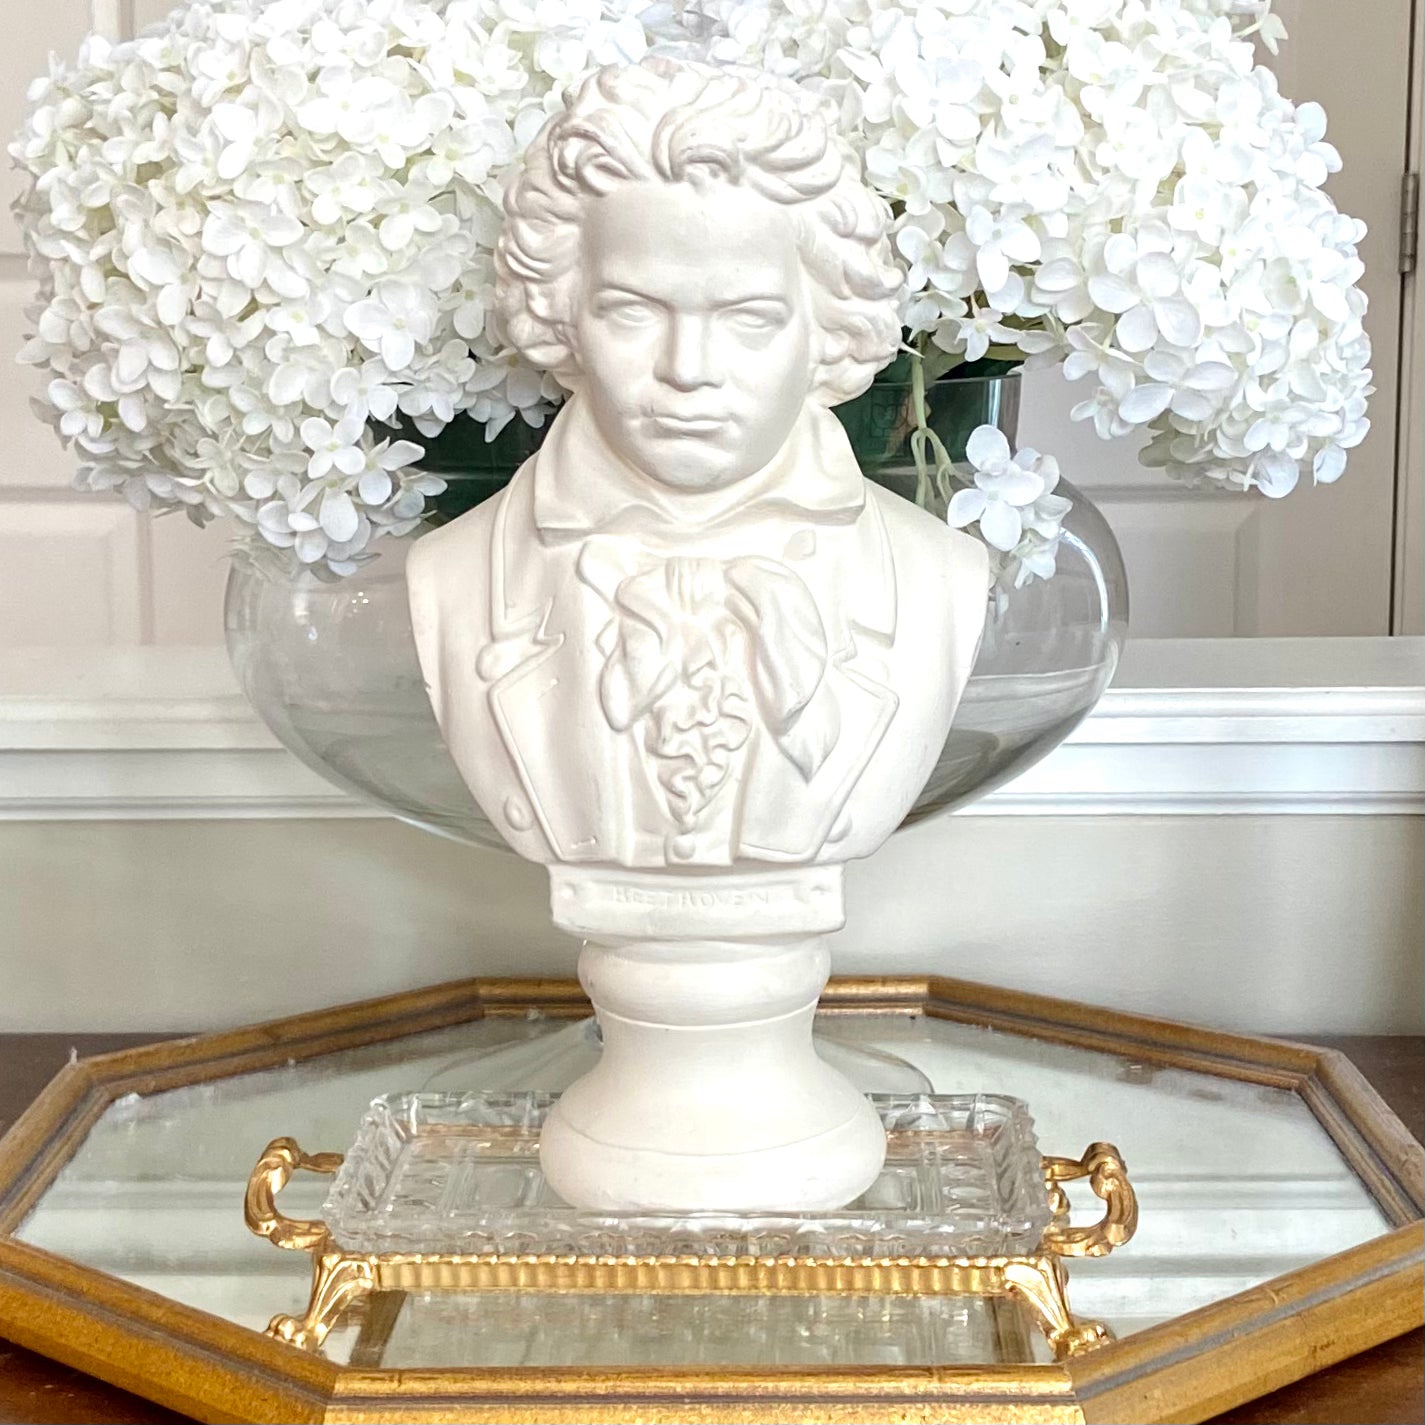 Vintage ivory cream statue bust of Gentleman 12x7” - stunning!